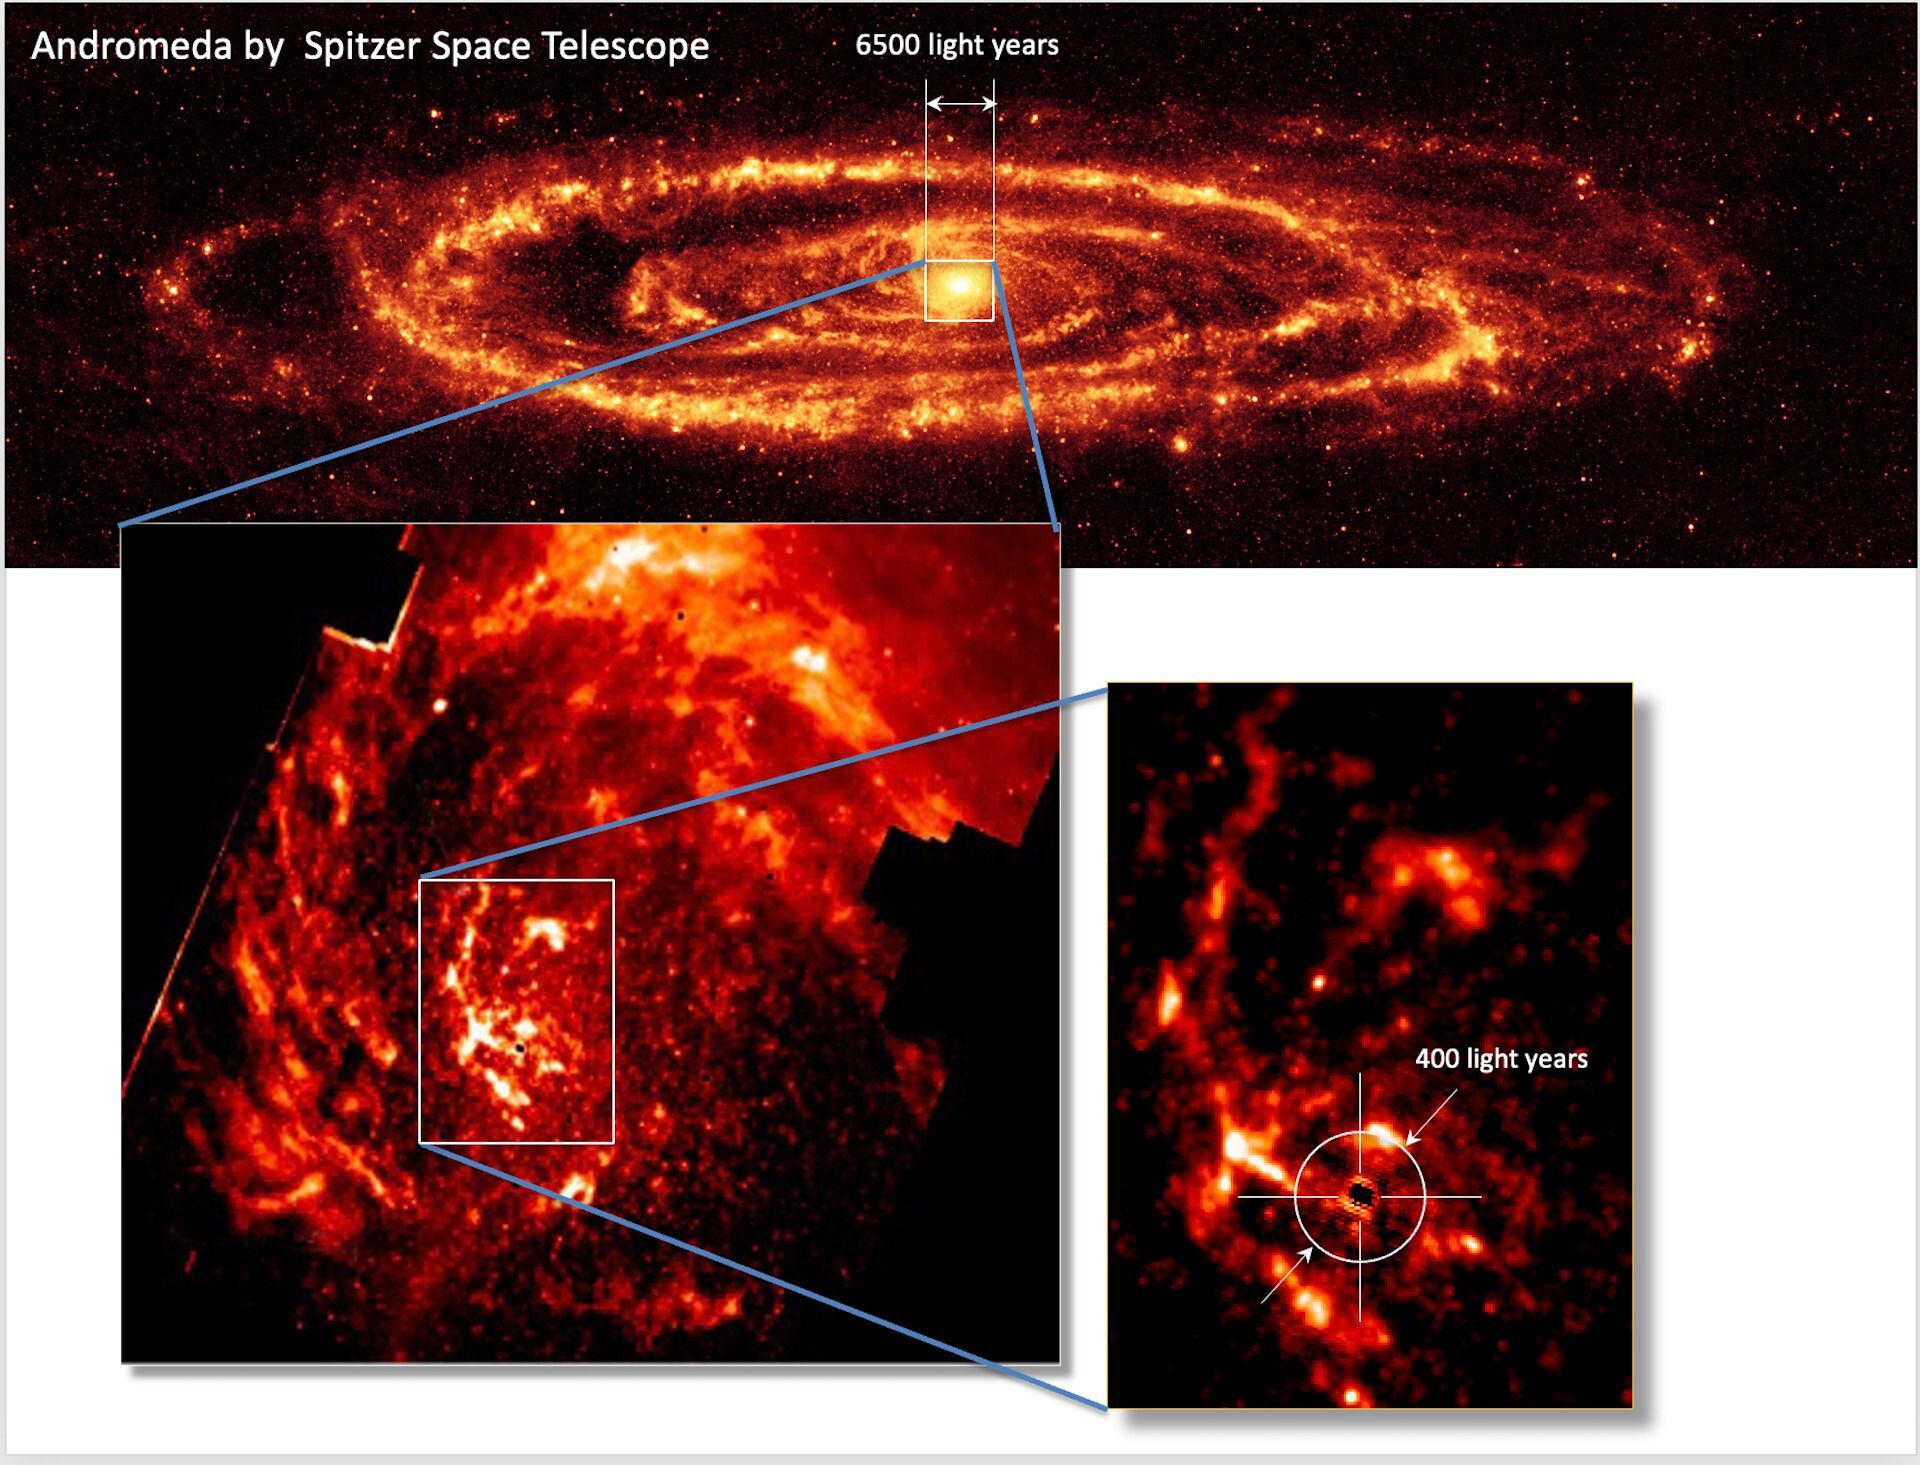 astrónomos descubren cómo se alimenta el aterrador agujero negro supermasivo de andrómeda